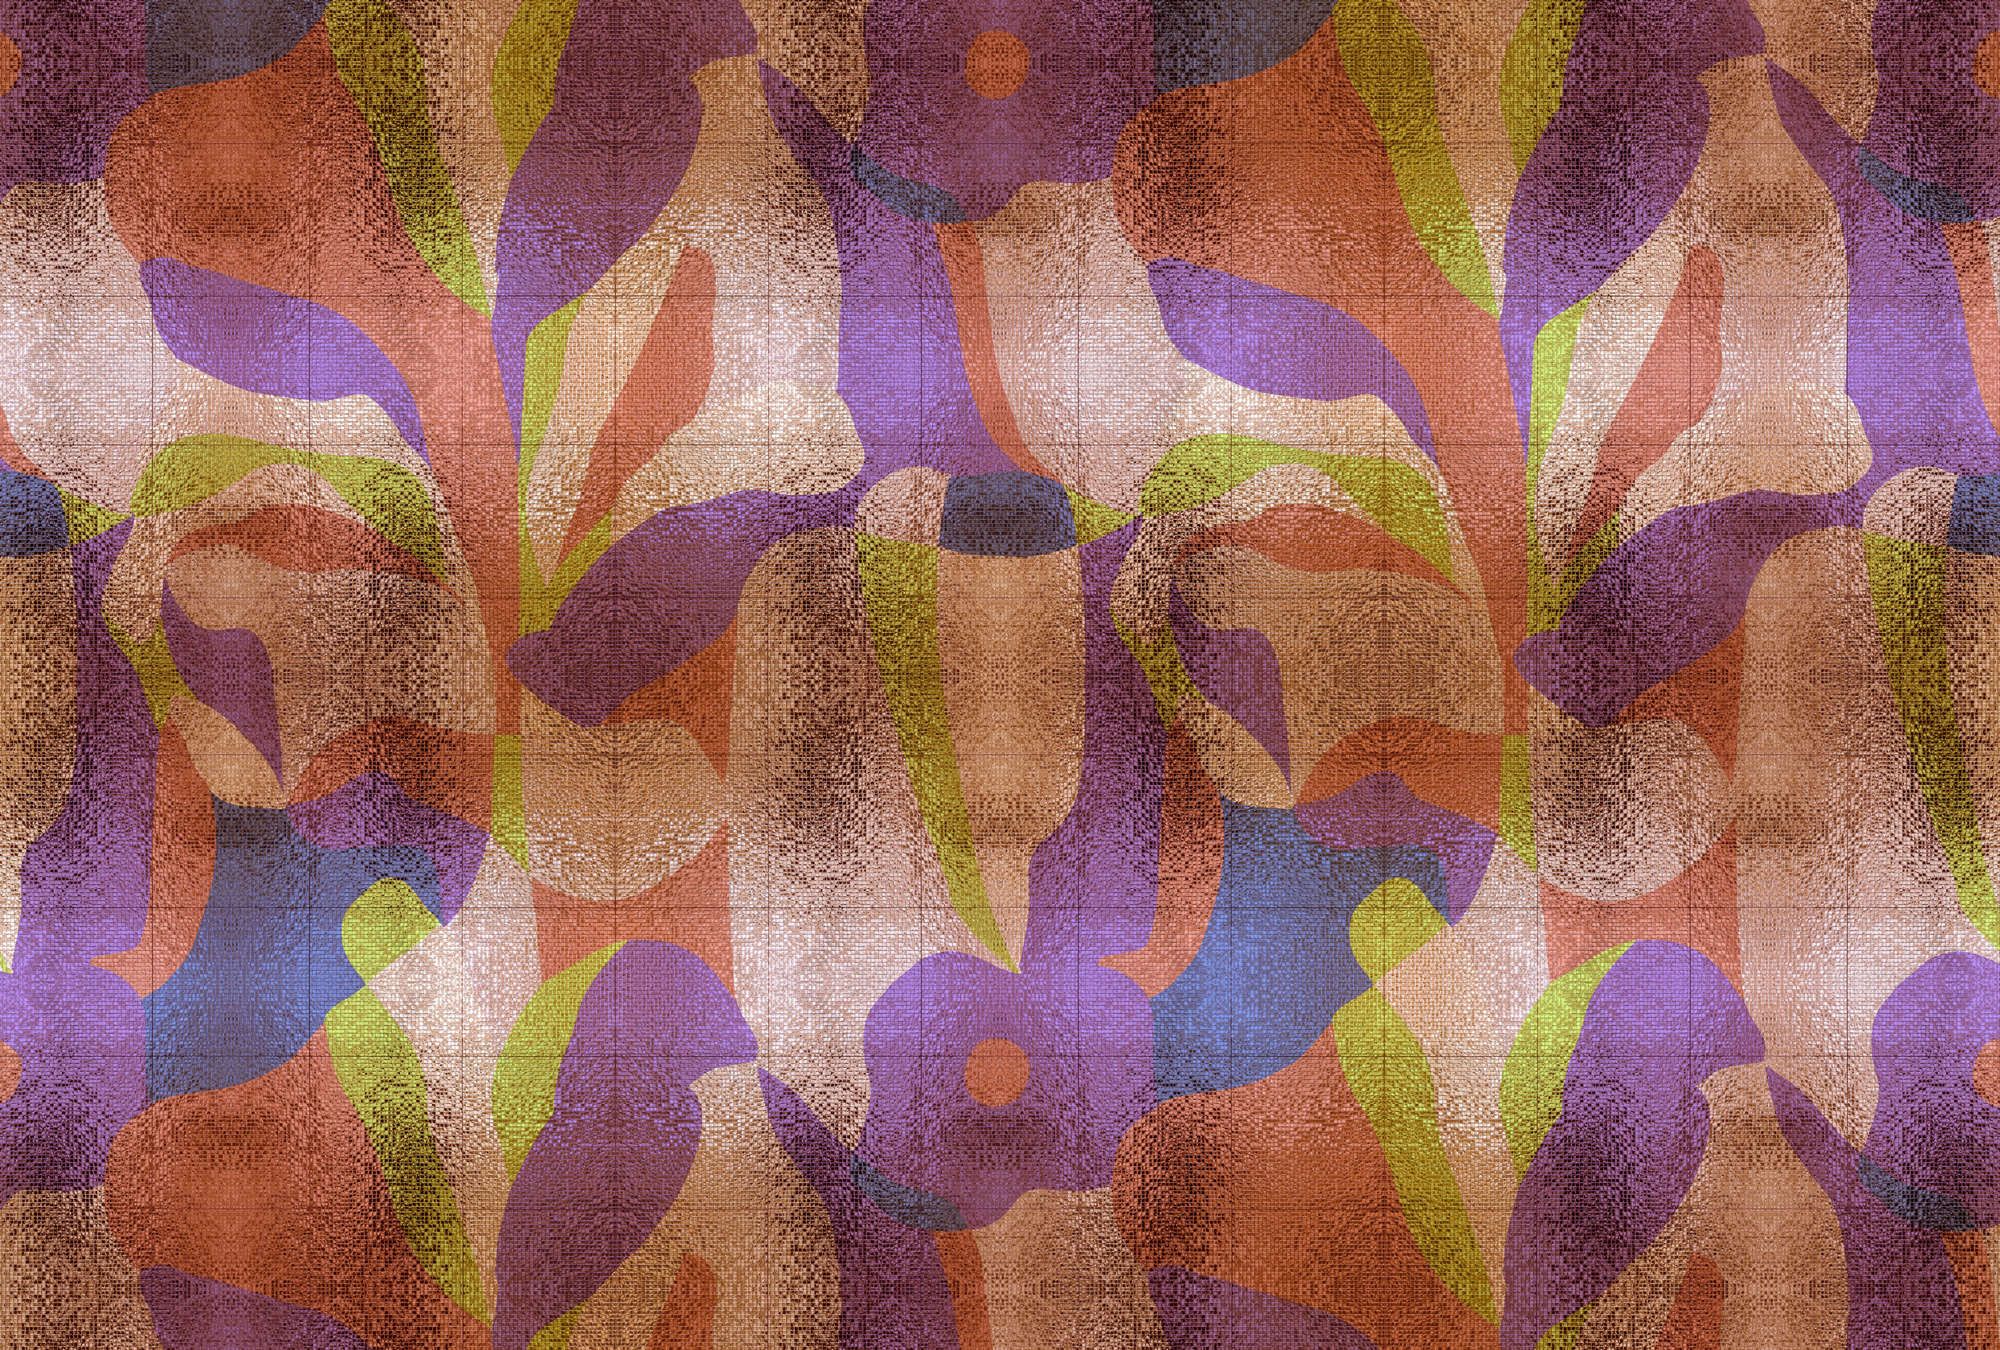             Fotomurali »brillanaza« - Disegno grafico di foglie colorate con struttura a mosaico - Materiali non tessuto opaco e liscio
        